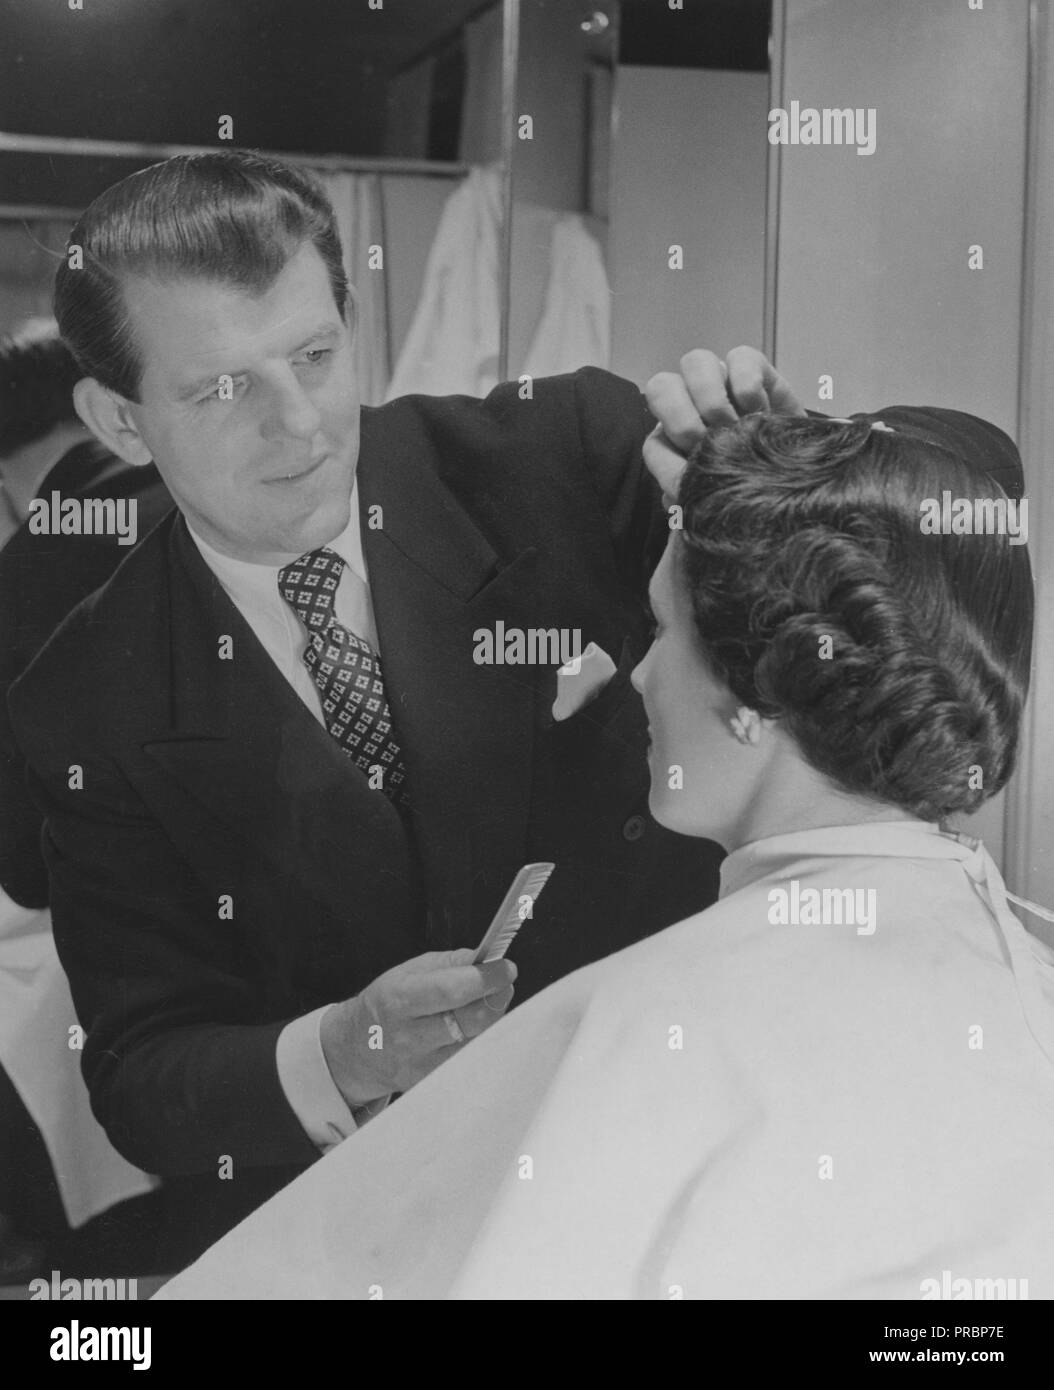 Ein 50er Jahre Frisur Eine Frau An Der Friseur Curt Hallin Erstellt Eine Typische 50er Jahre Frisur Stockfotografie Alamy